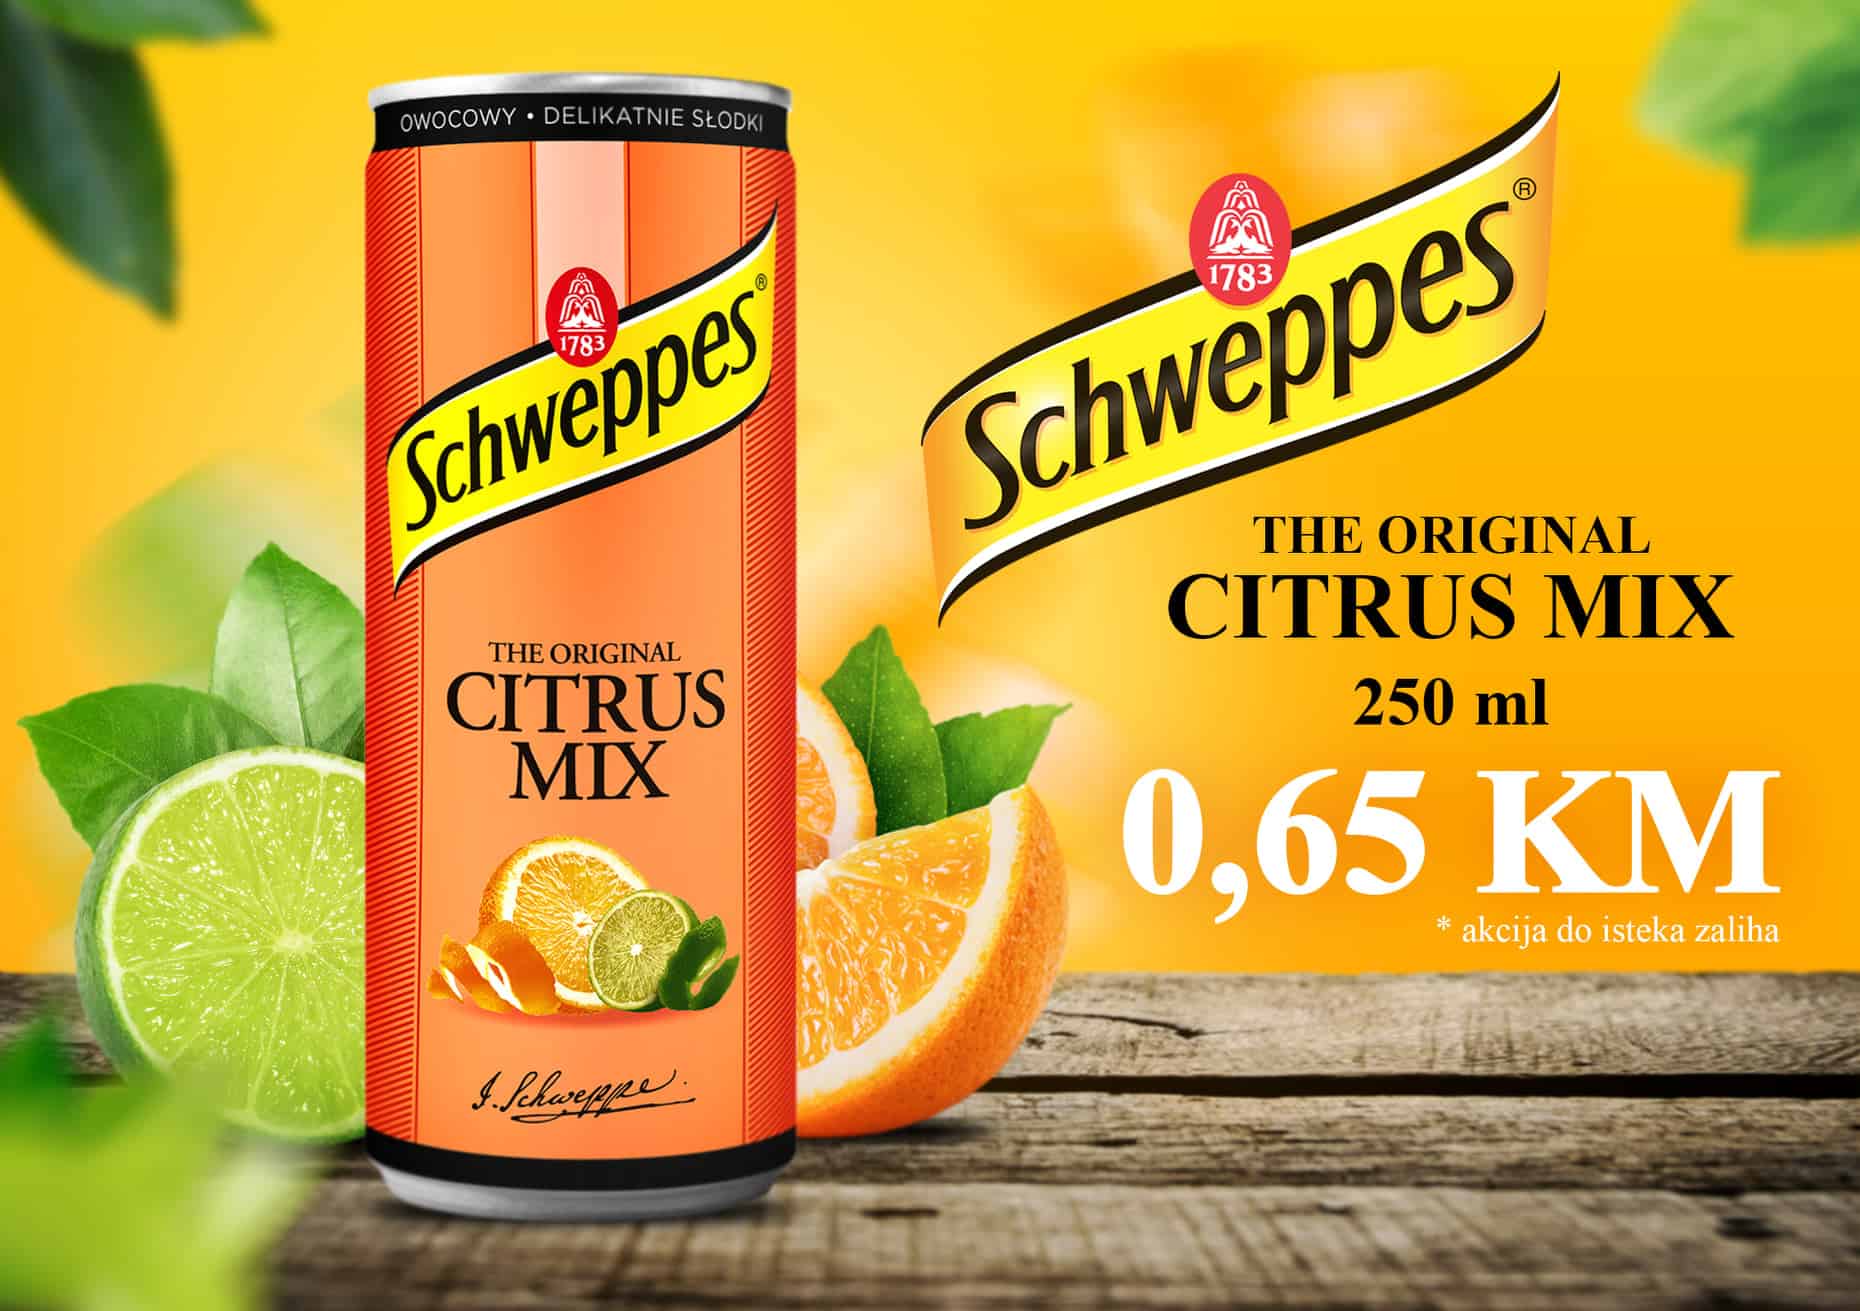 Schweppes nam donosi gazirani napitak s okusom naranče, grejpa i mandarine 👌 SCHWEPPES CITRUS MIX 250 ml po odličnoj cijeni od 0,65 KM 🙃 Osvježavajući okus tonika zadovoljit će i najzahtjevnija nepca! 